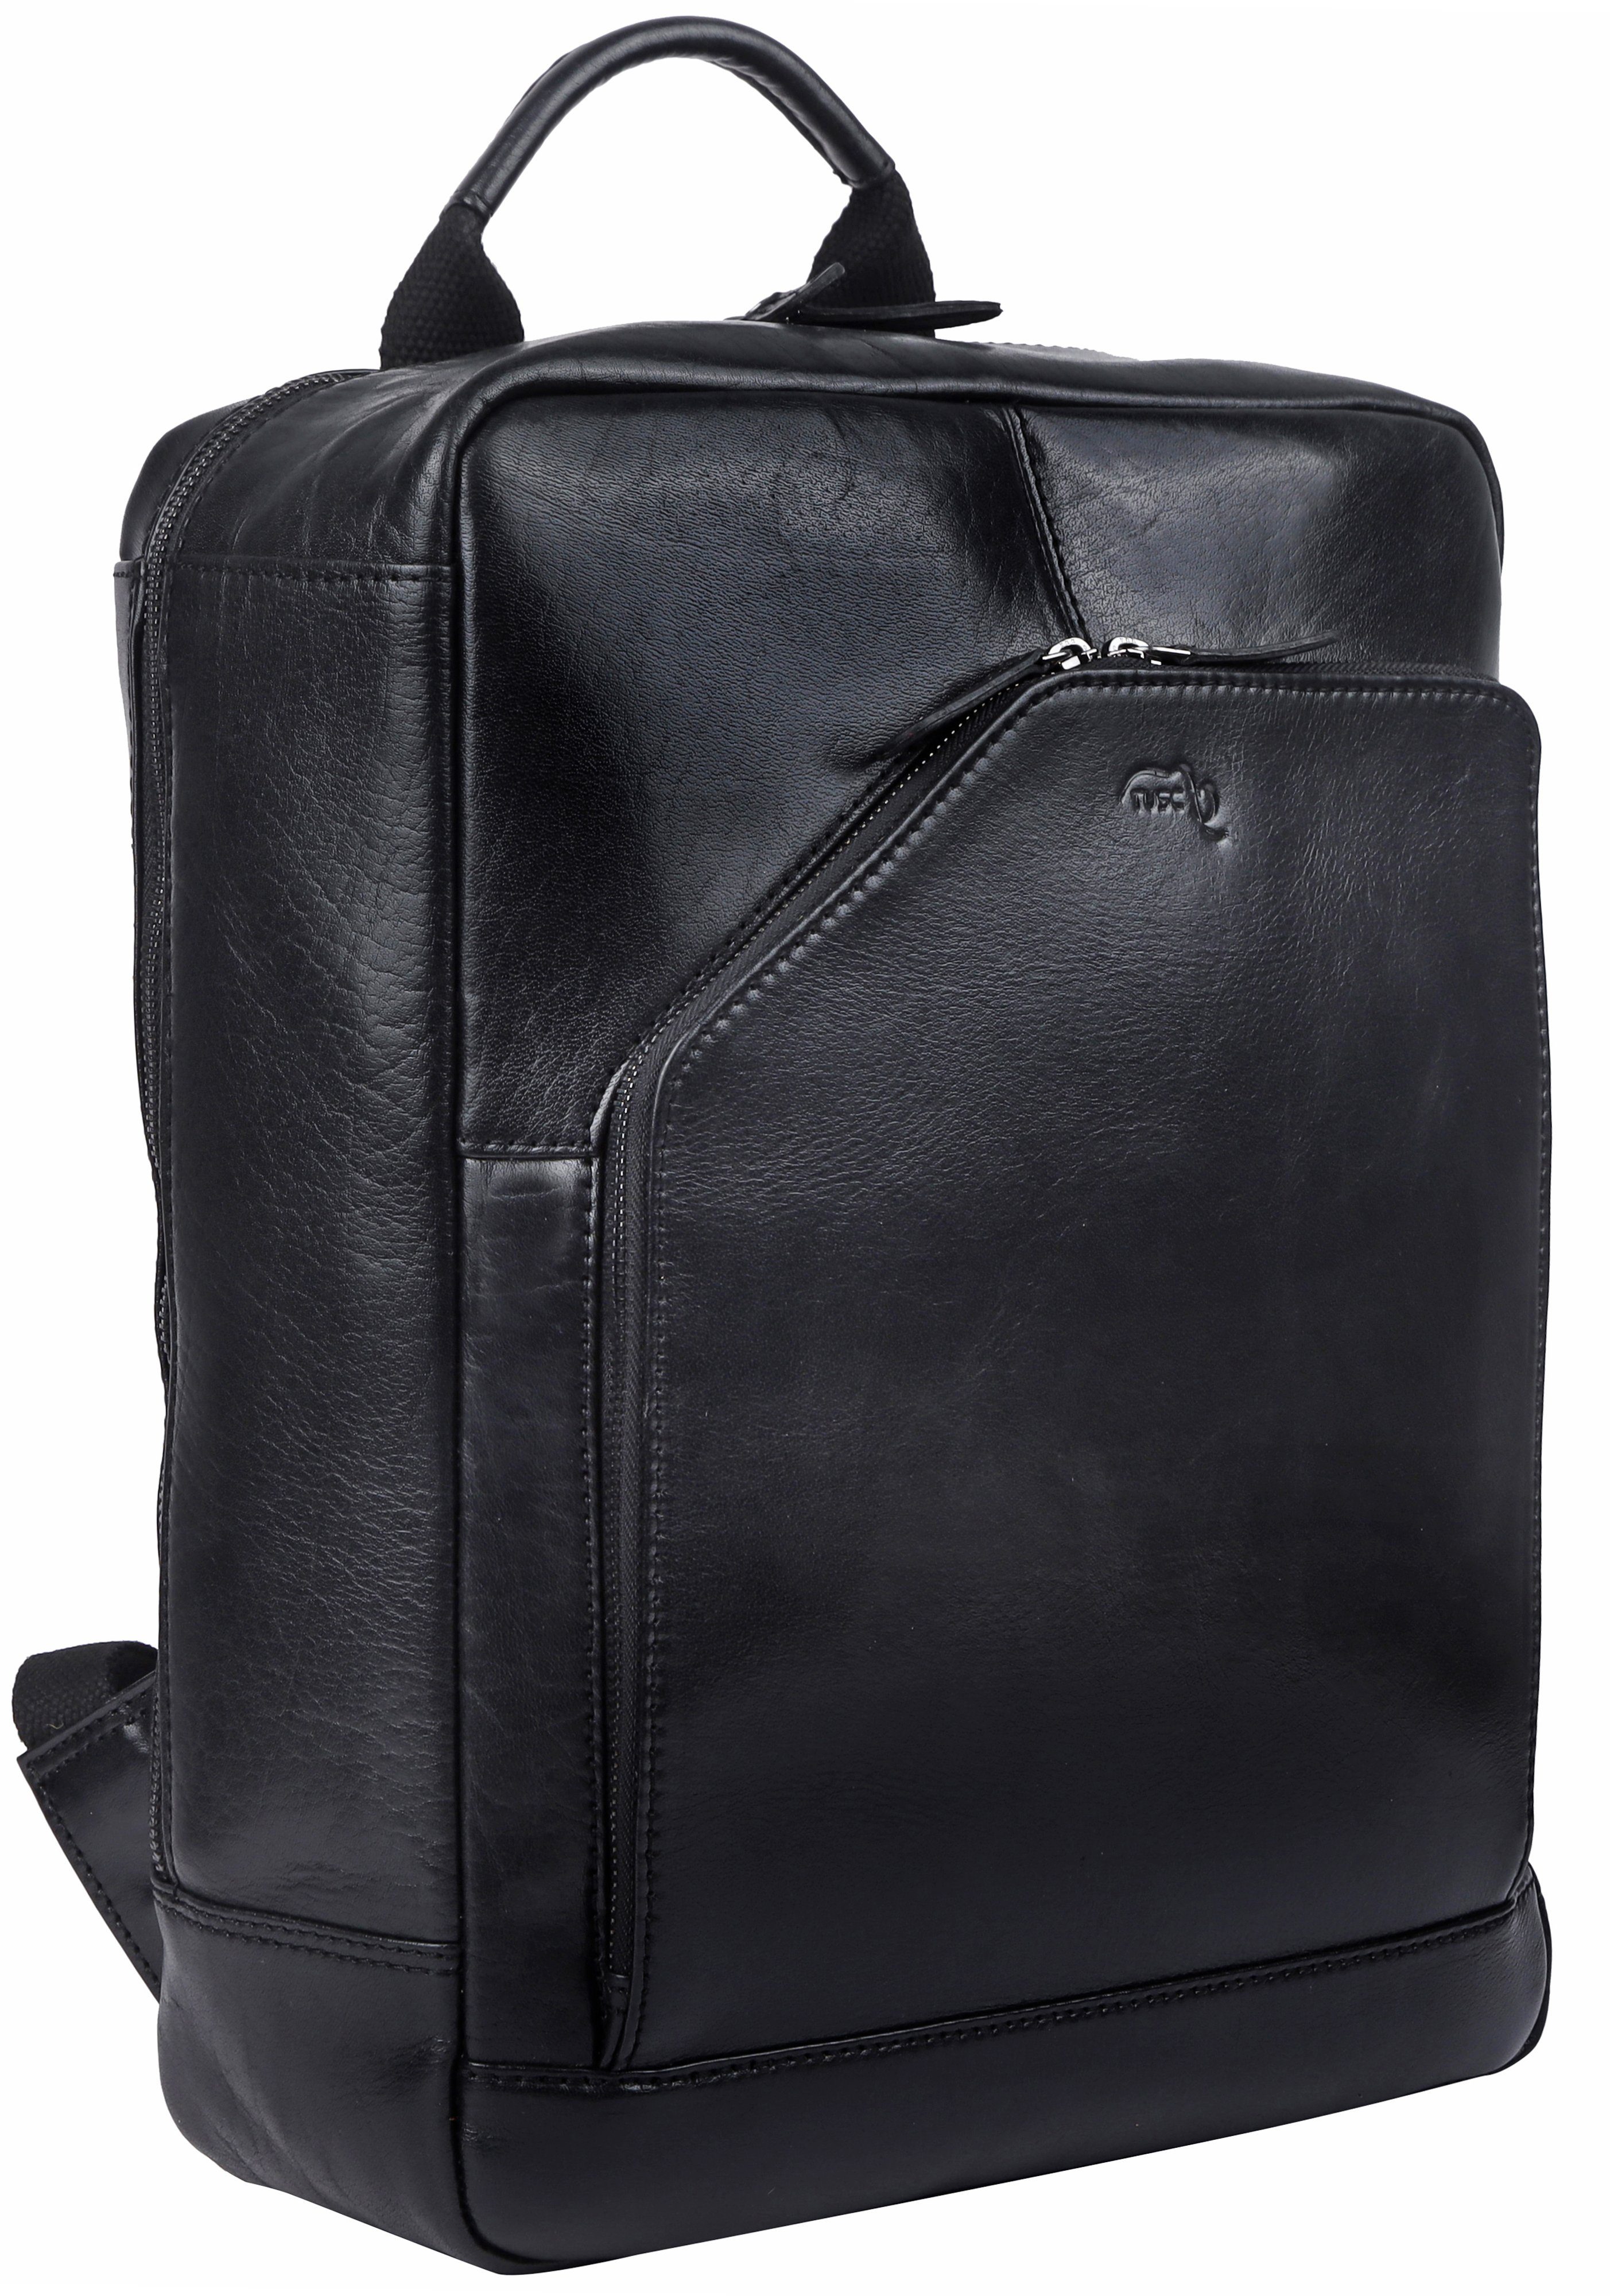 TUSC Tagesrucksack Corvus 15M, Premium Rucksack aus Leder für Laptop bis 15,6 Zoll. Midnight